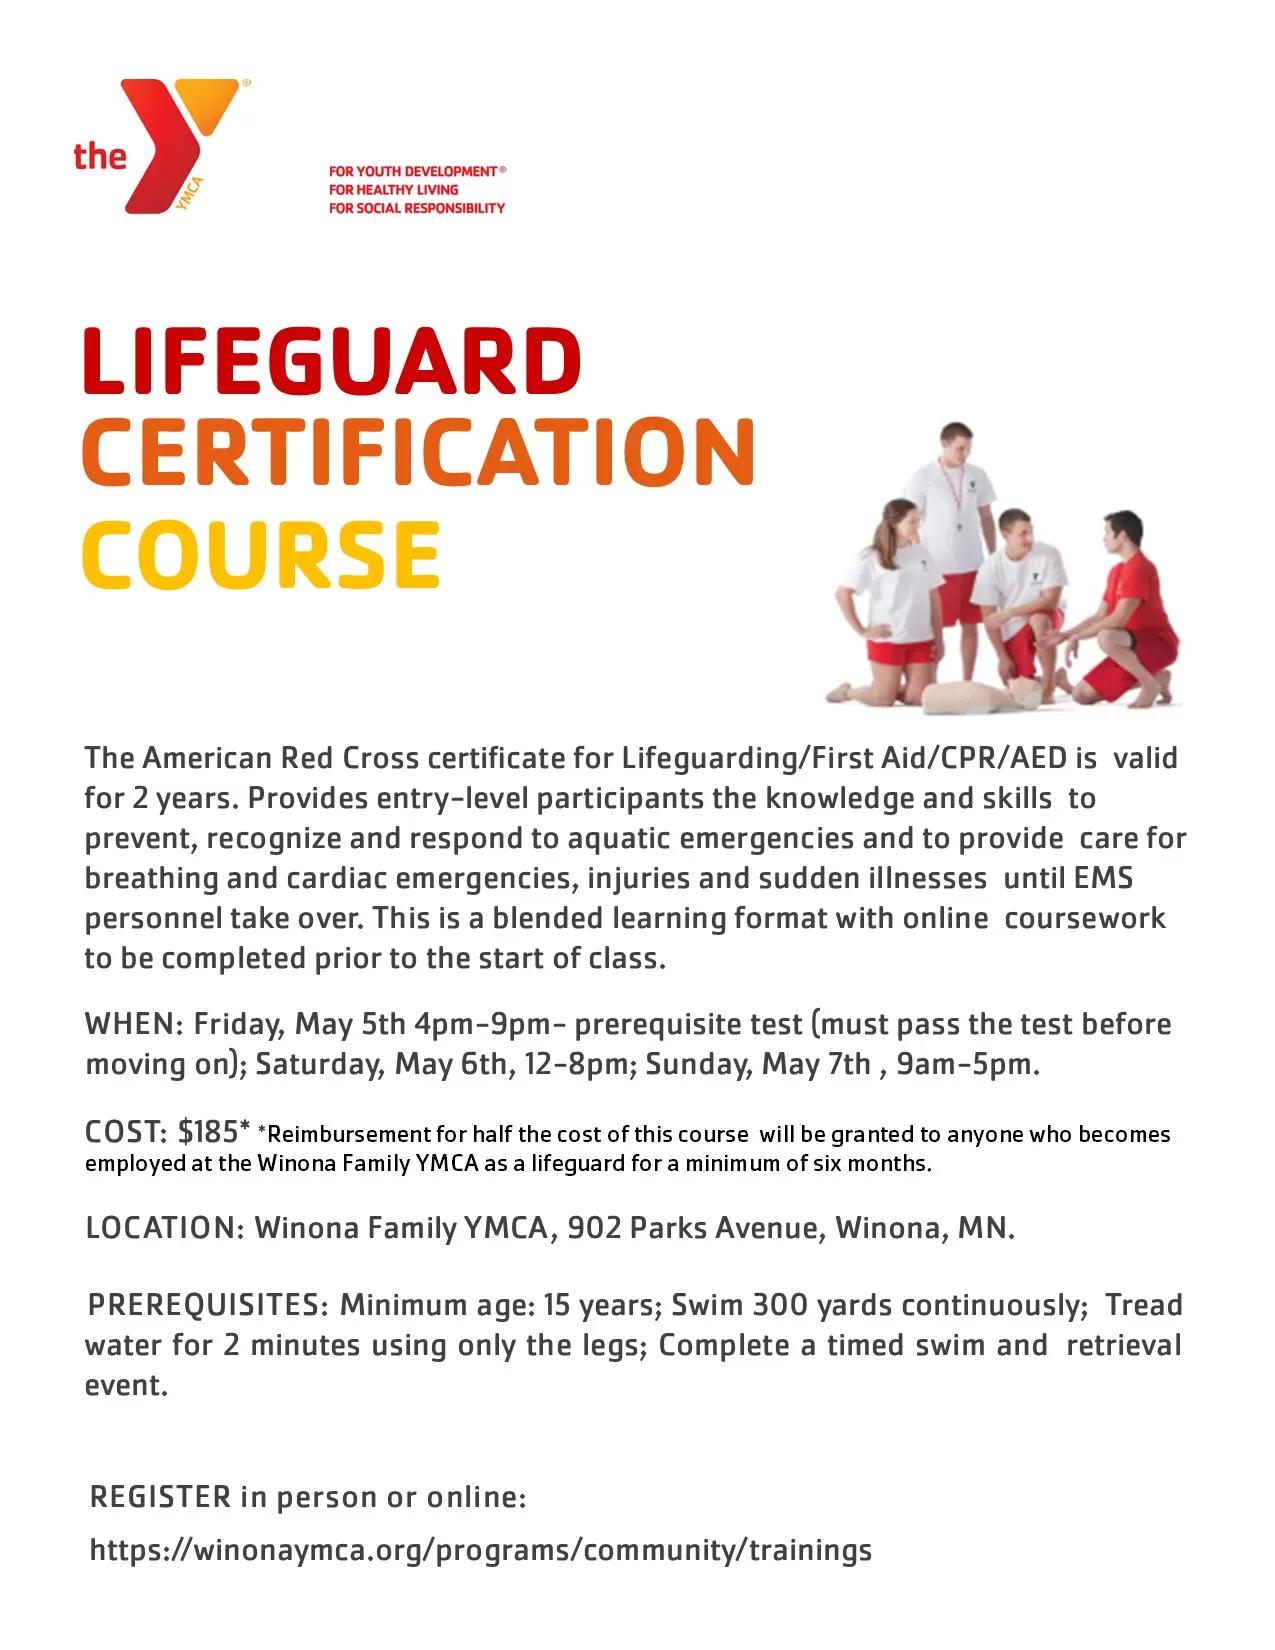 Lifeguard course 